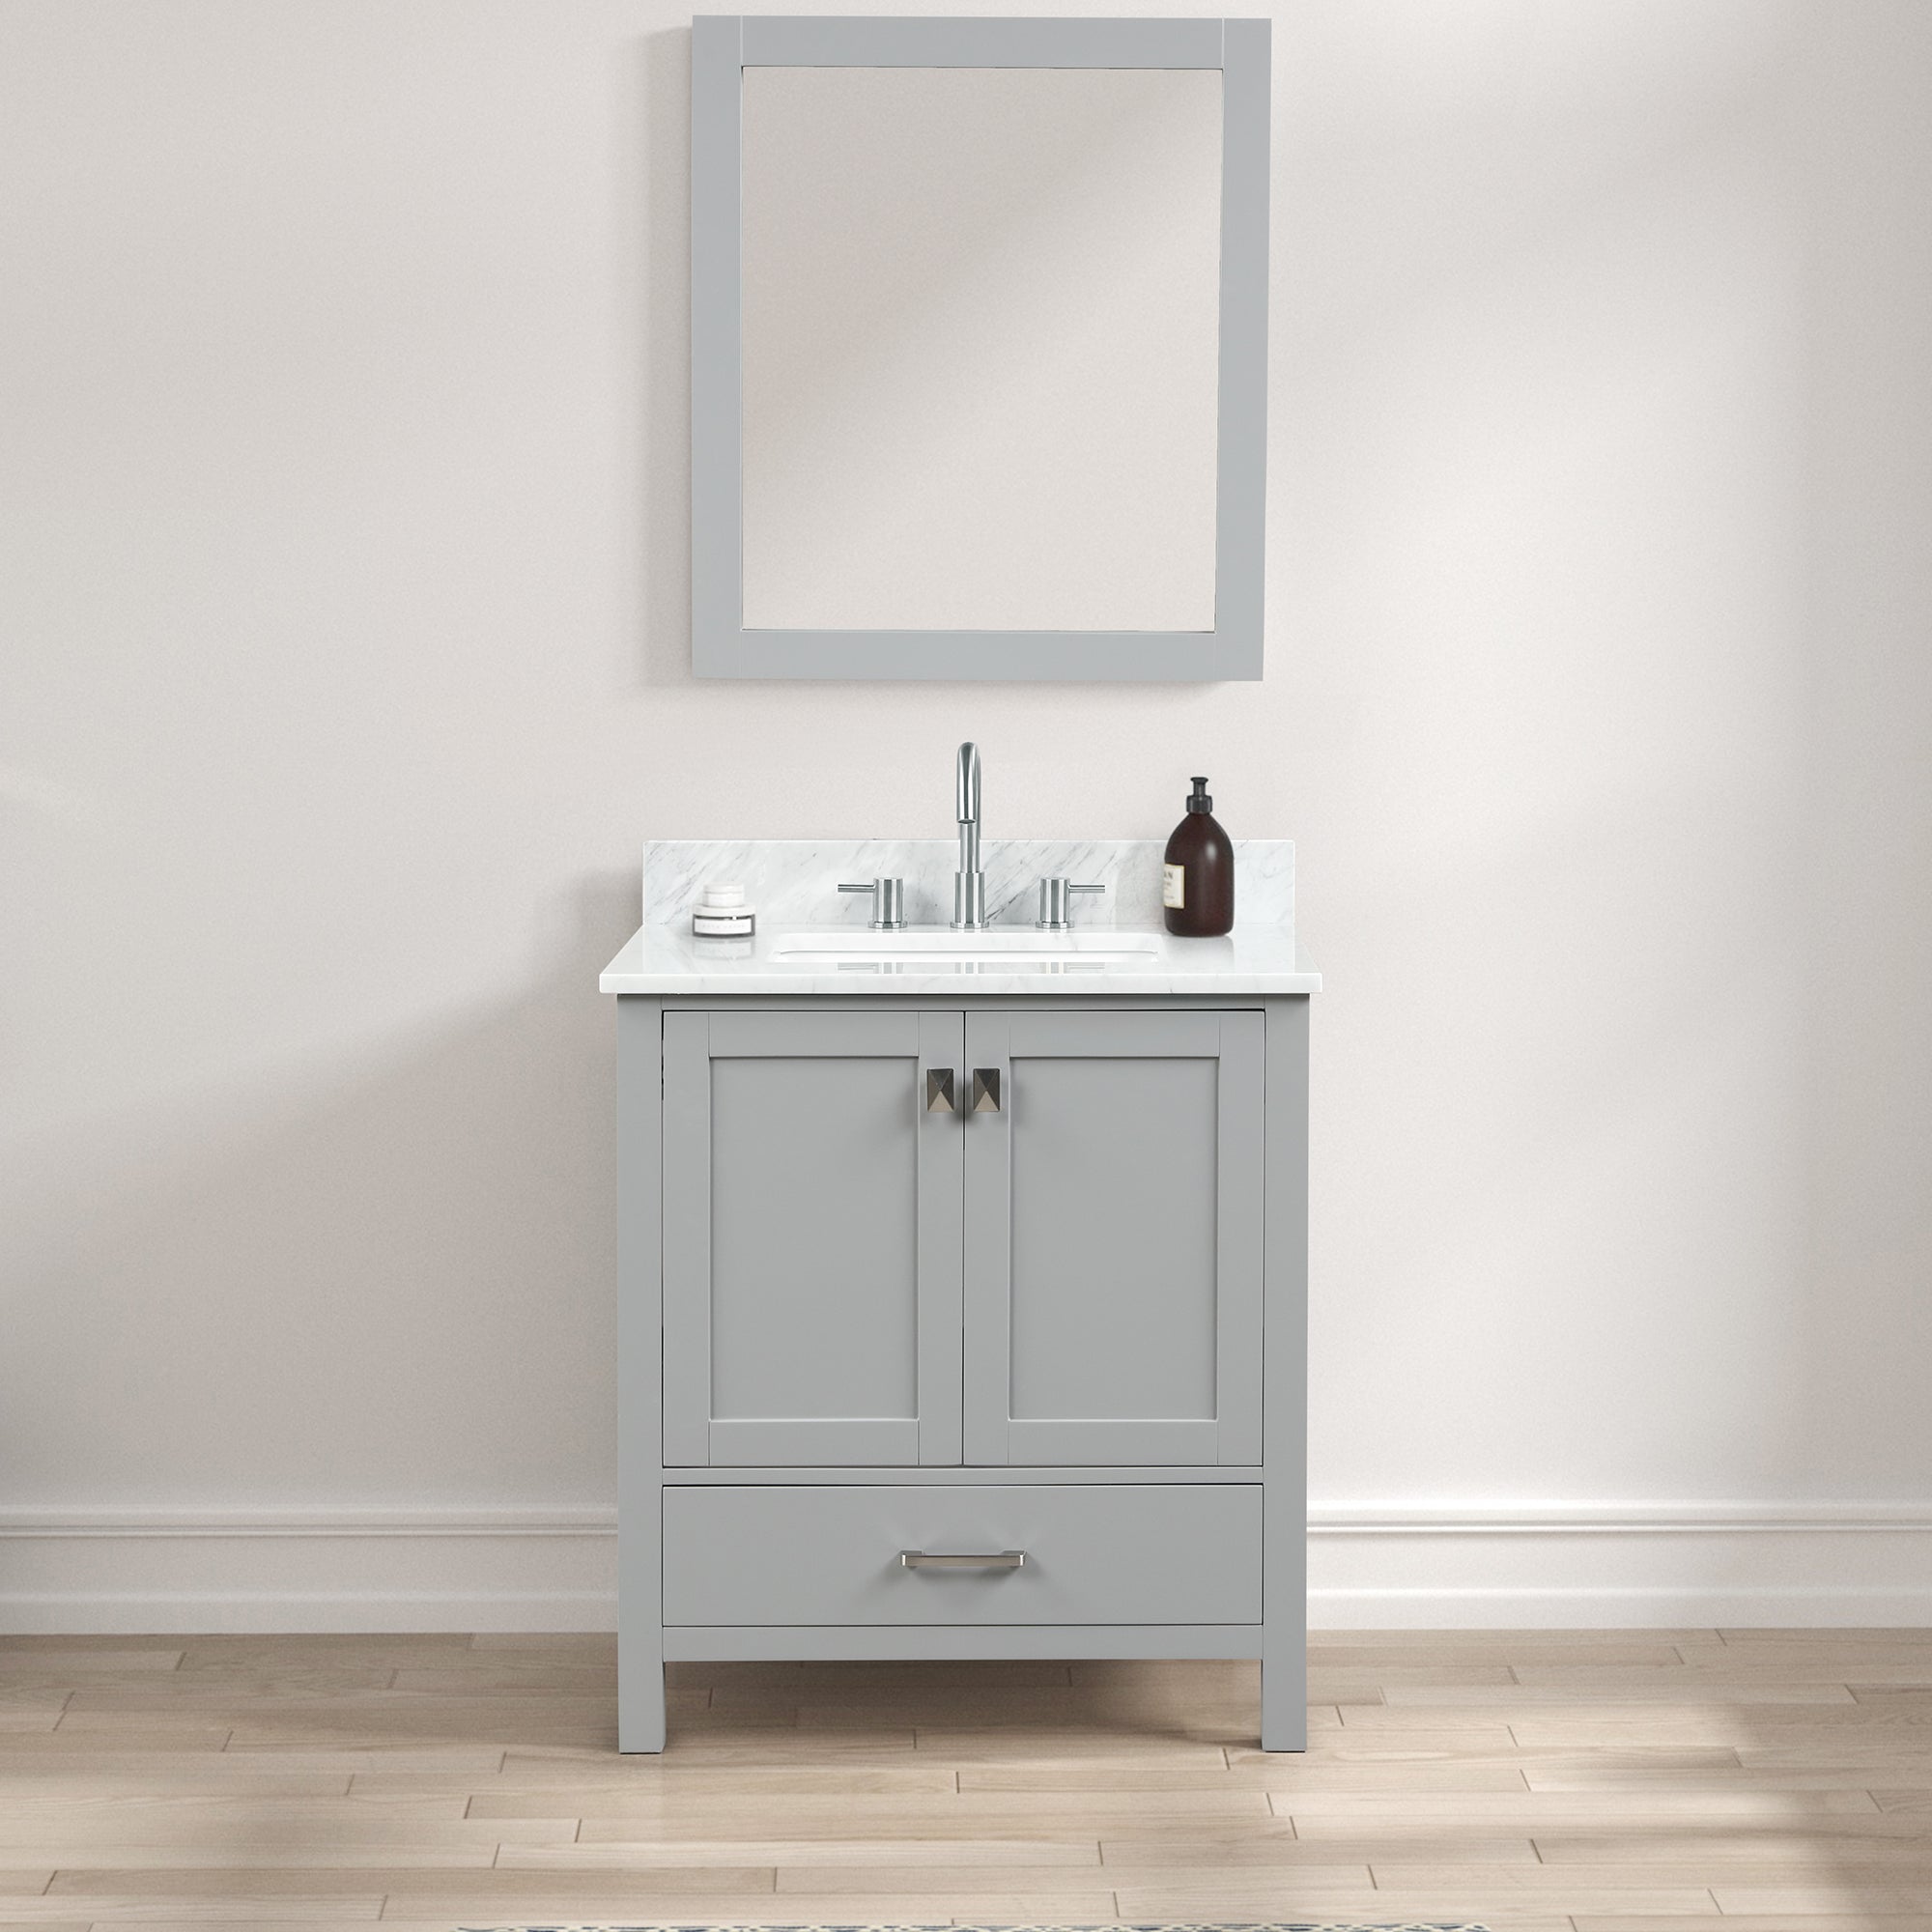 Geneva 30" Bathroom Vanity with Marble Countertop - Contemporary Bathroom Vanity